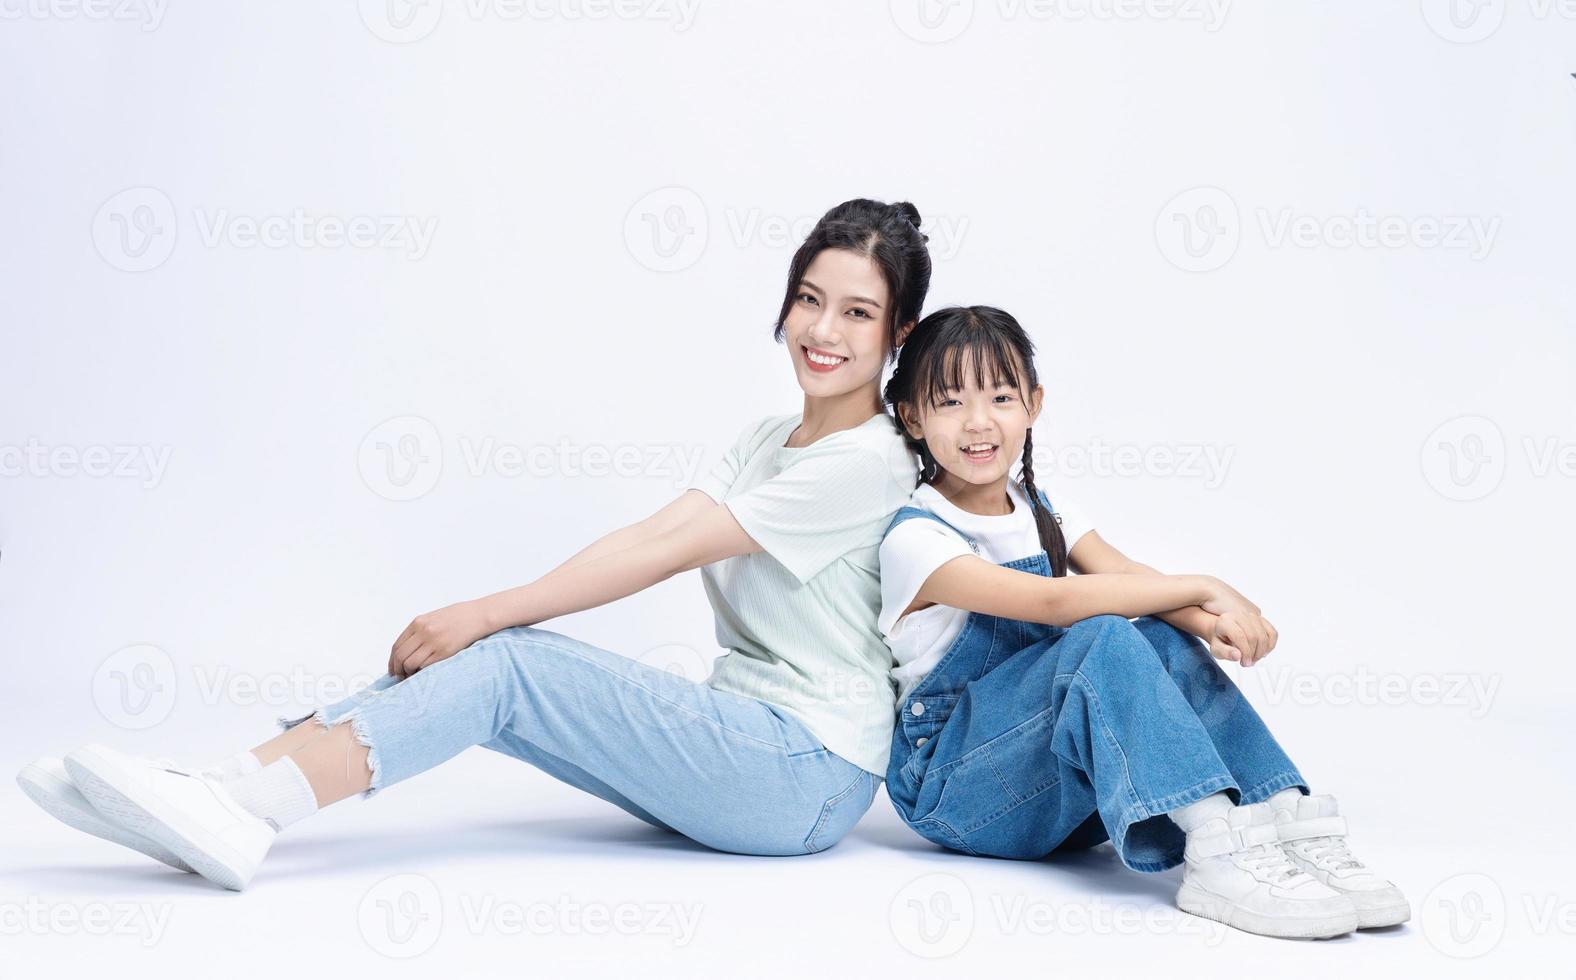 bild av asiatisk mor och dotter på bakgrund foto